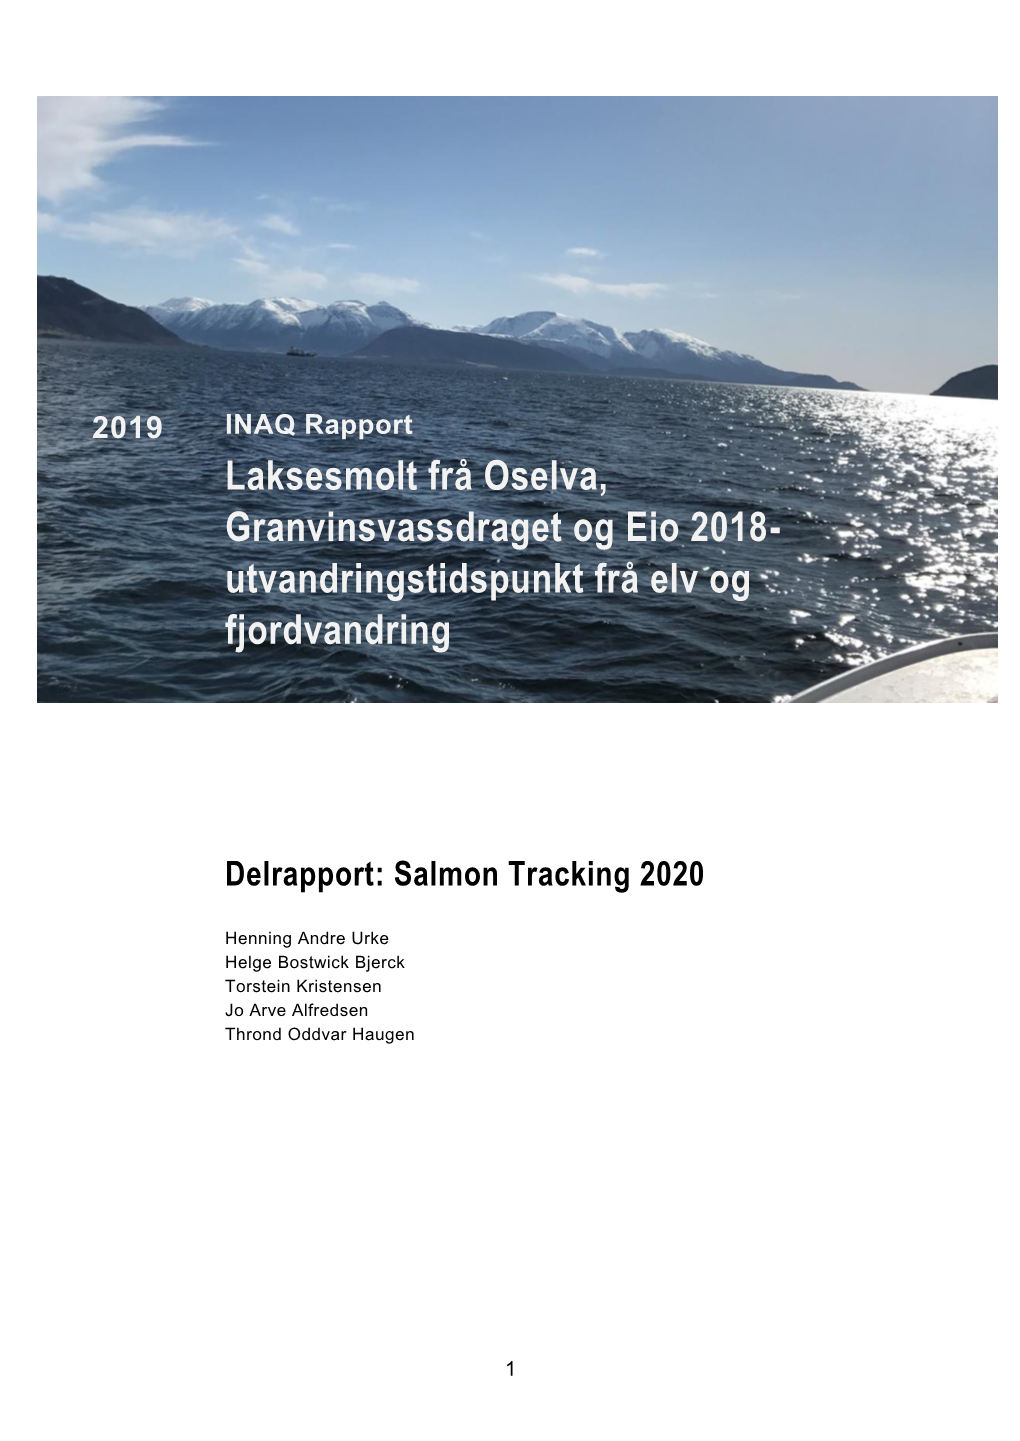 Laksesmolt Frå Oselva, Granvinsvassdraget Og Eio 2018- Utvandringstidspunkt Frå Elv Og Fjordvandring